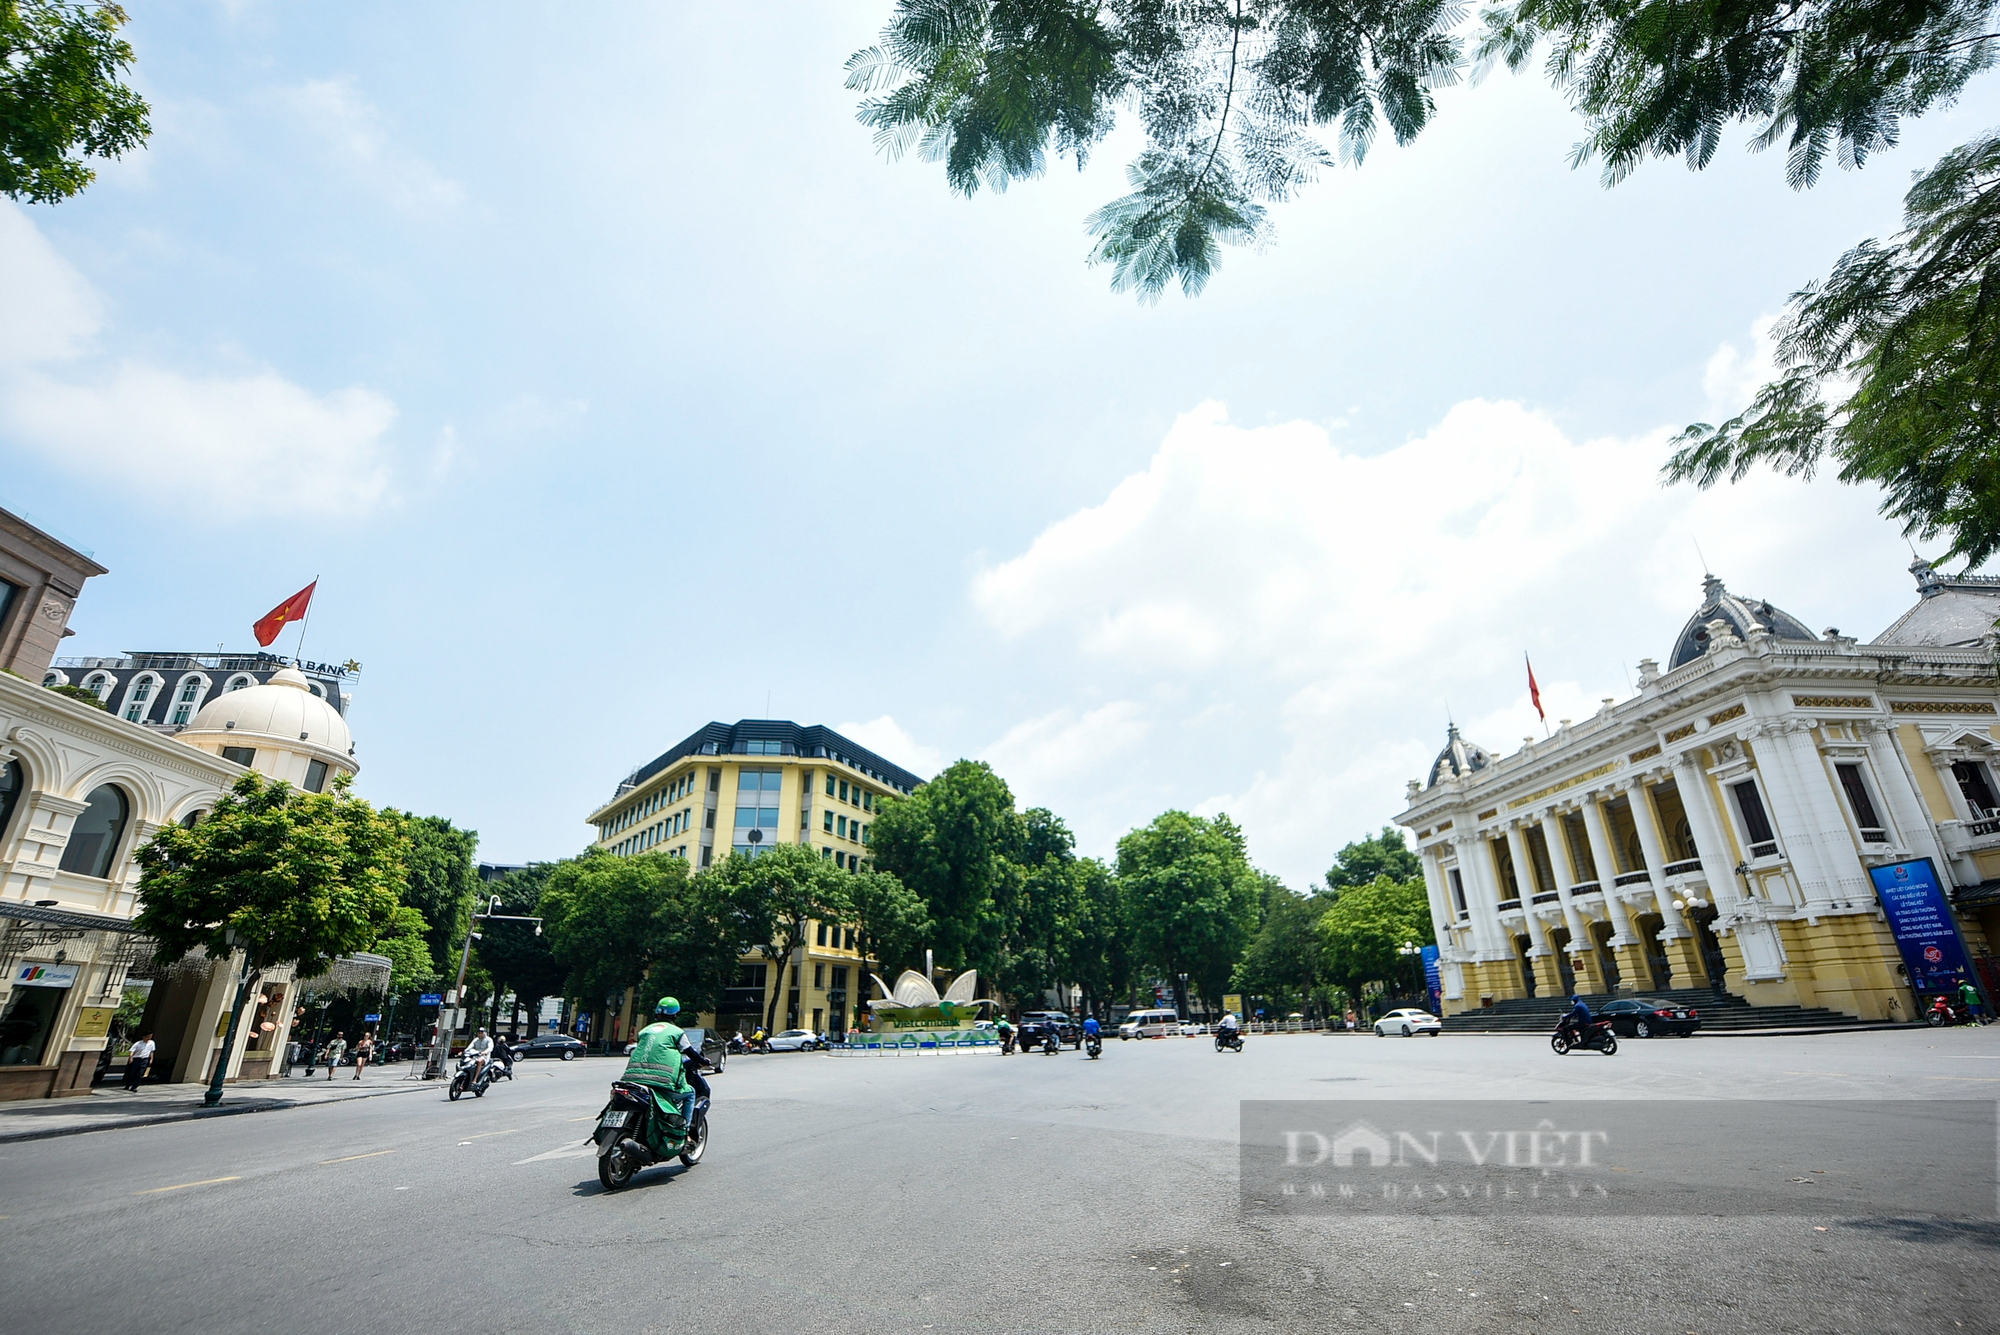 Cận cảnh khu vực quanh nhà hát Lớn được đề xuất xây nhà hát các dân tộc Việt Nam - Ảnh 5.